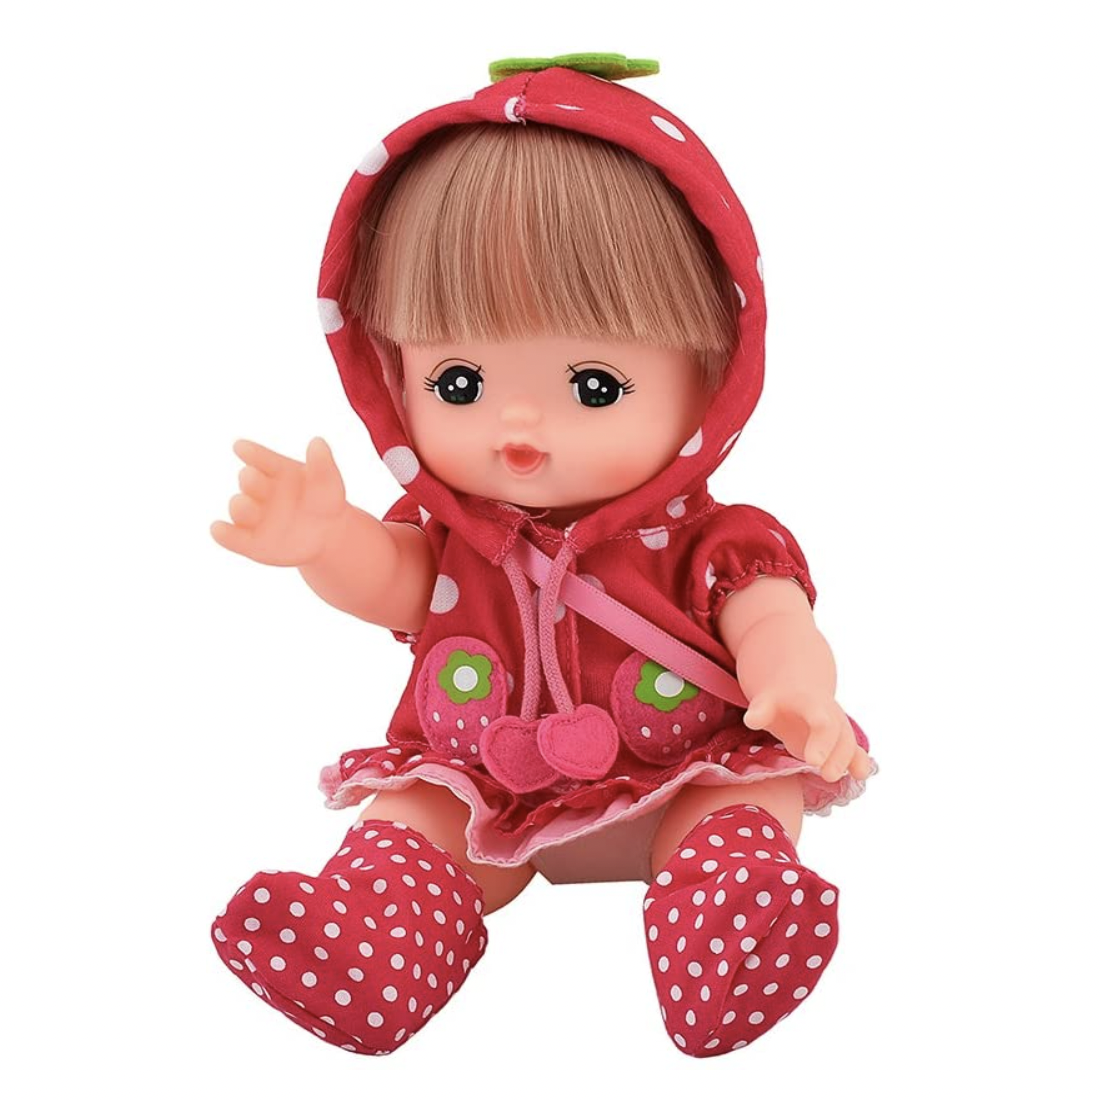 เมลจัง (MELL CHAN®) ชุดเมลจัง ชุดแจ็คเก็ต ลายสตรอเบอร์รี่ Strawberry Jacket ชุดตุ๊กตา Mel-chan ตุ๊กตาเมลจัง Mel-chan ของเล่นญี่ปุ่น ลิขสิทธิ์แท้ พร้อมส่ง